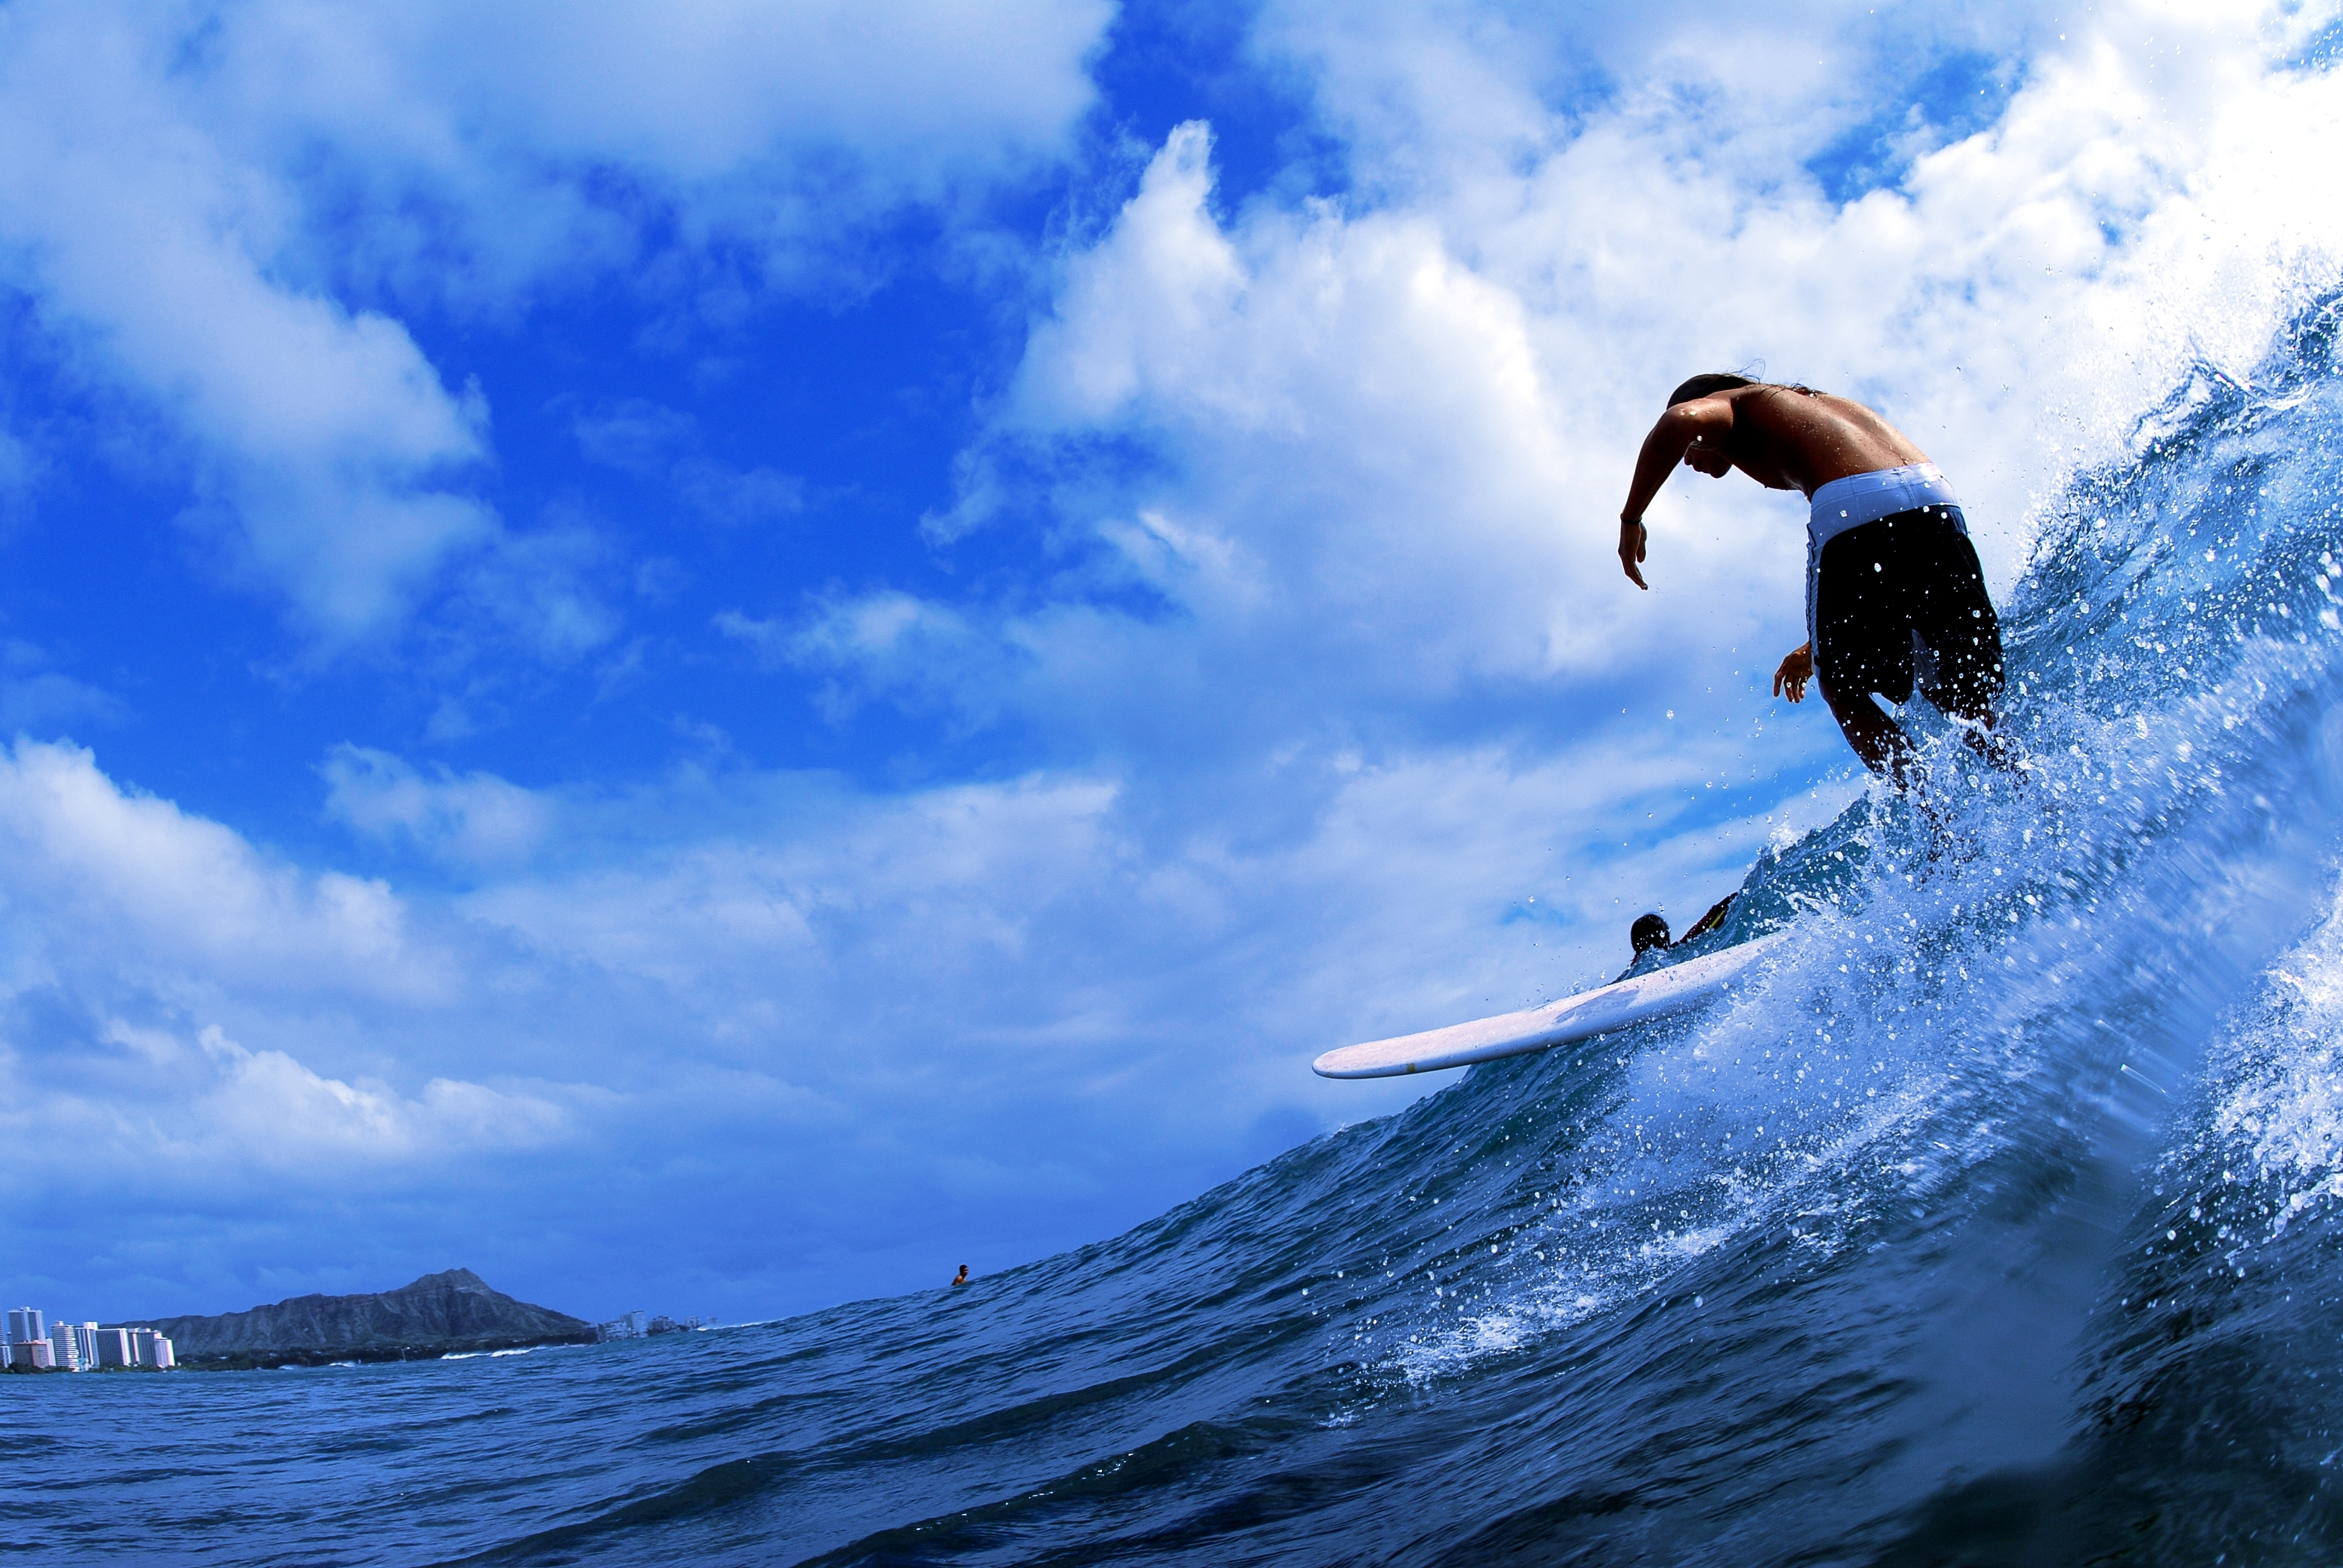 High Definition Surfing background